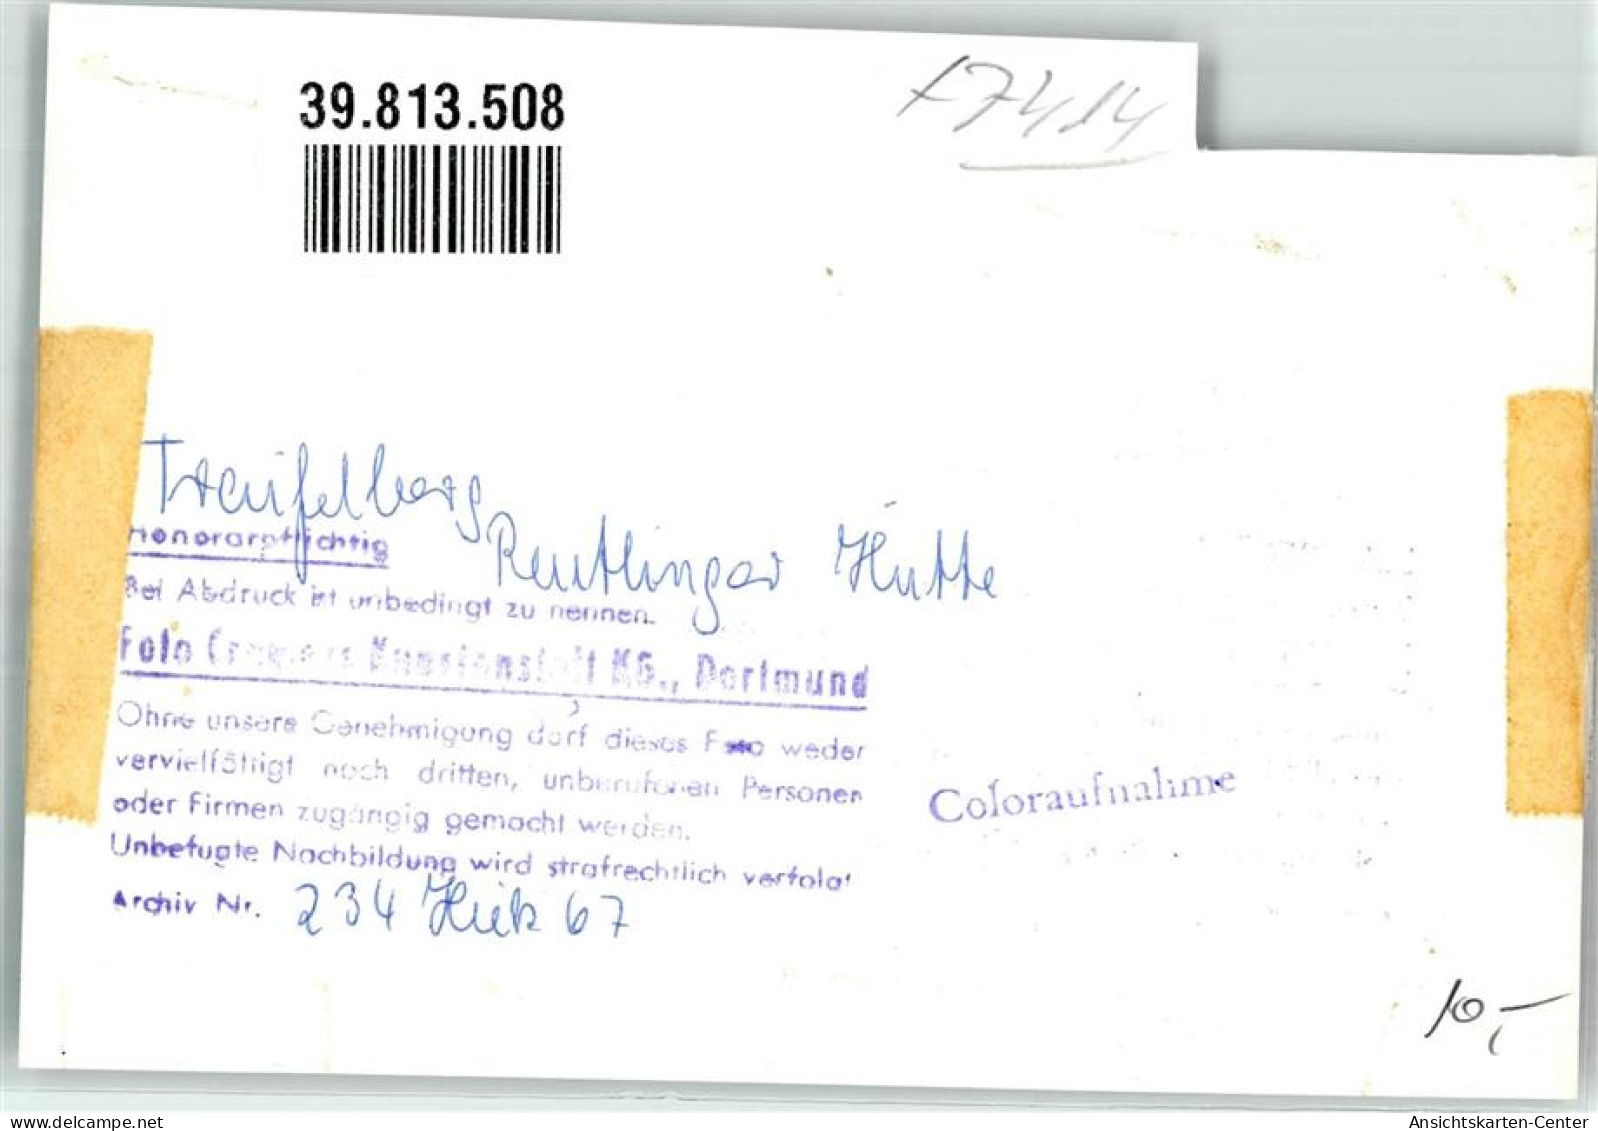 39813508 - Traifelberg - Reutlingen